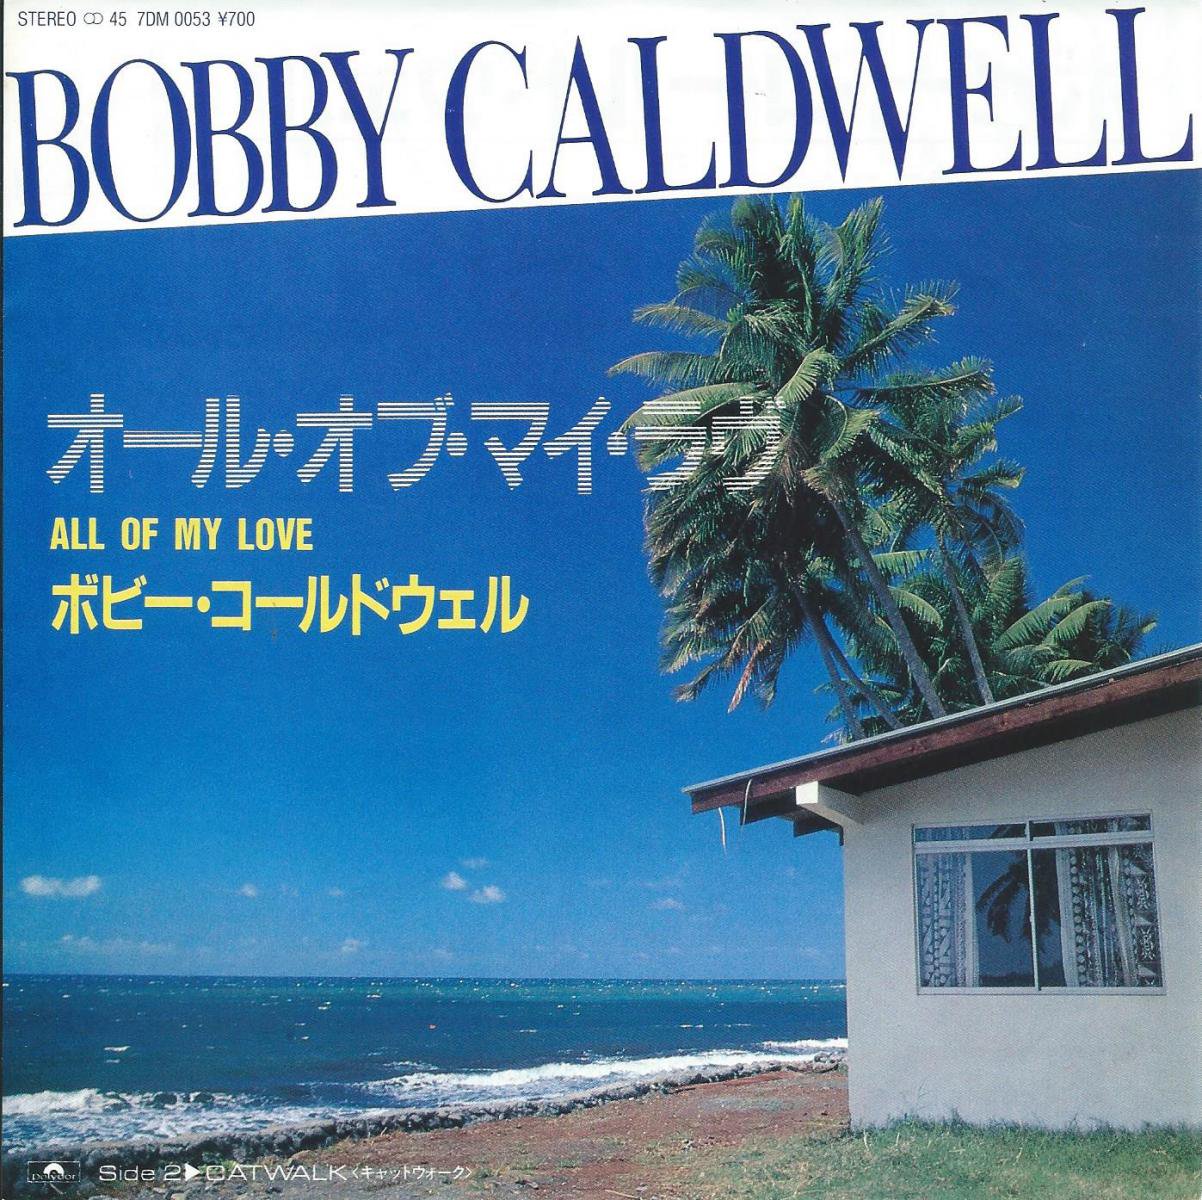 ボビー・コールドウェル BOBBY CALDWELL / オール・オブ・マイ・ラヴ ALL OF MY LOVE / キャットウォーク CATWALK (7